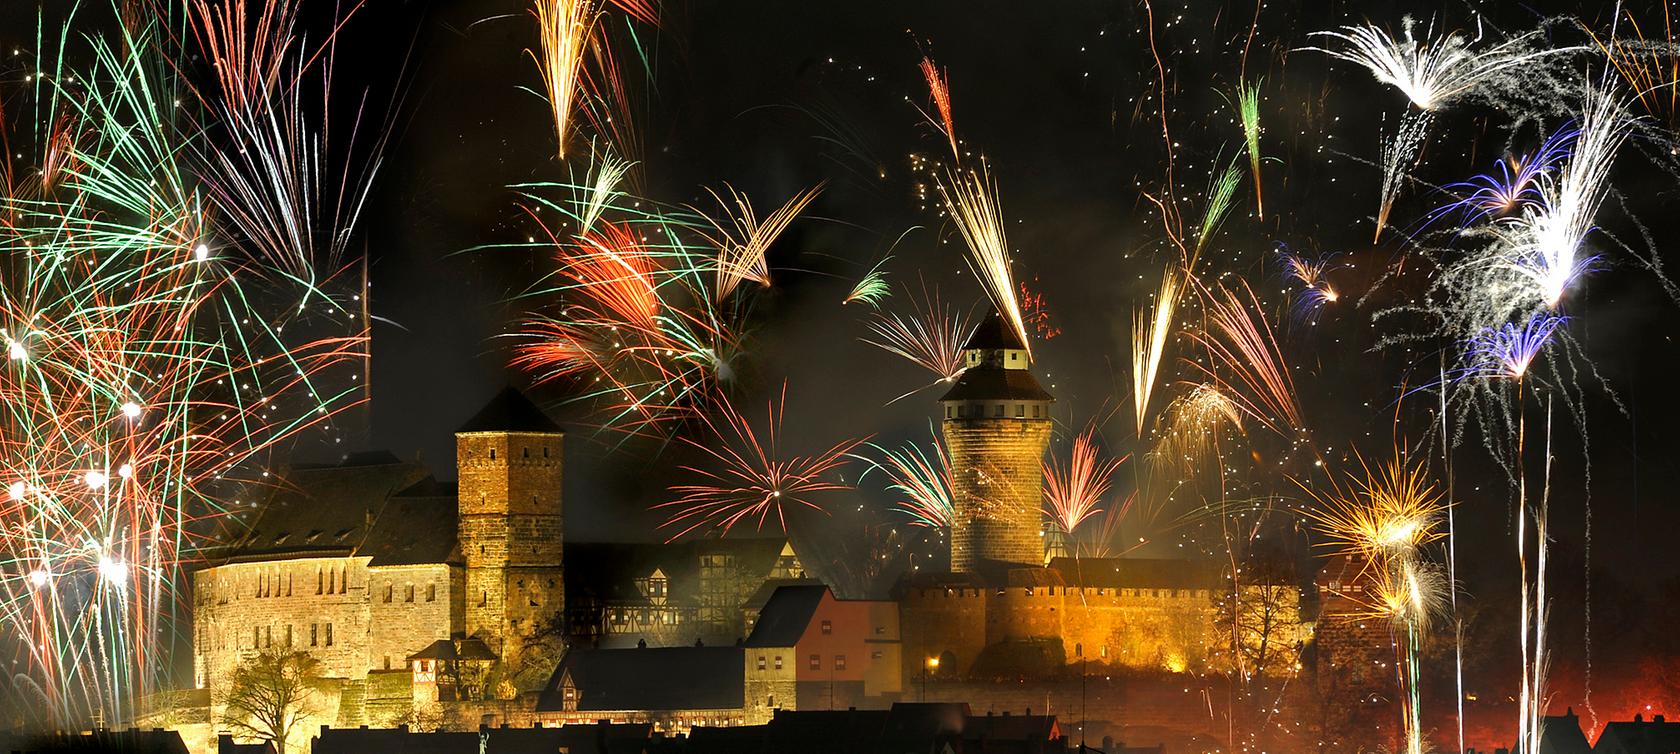 Rund um die Nürnberger Burg wird es an Silvester verboten sein, Raketen und Böller zu zünden oder mitzuführen.